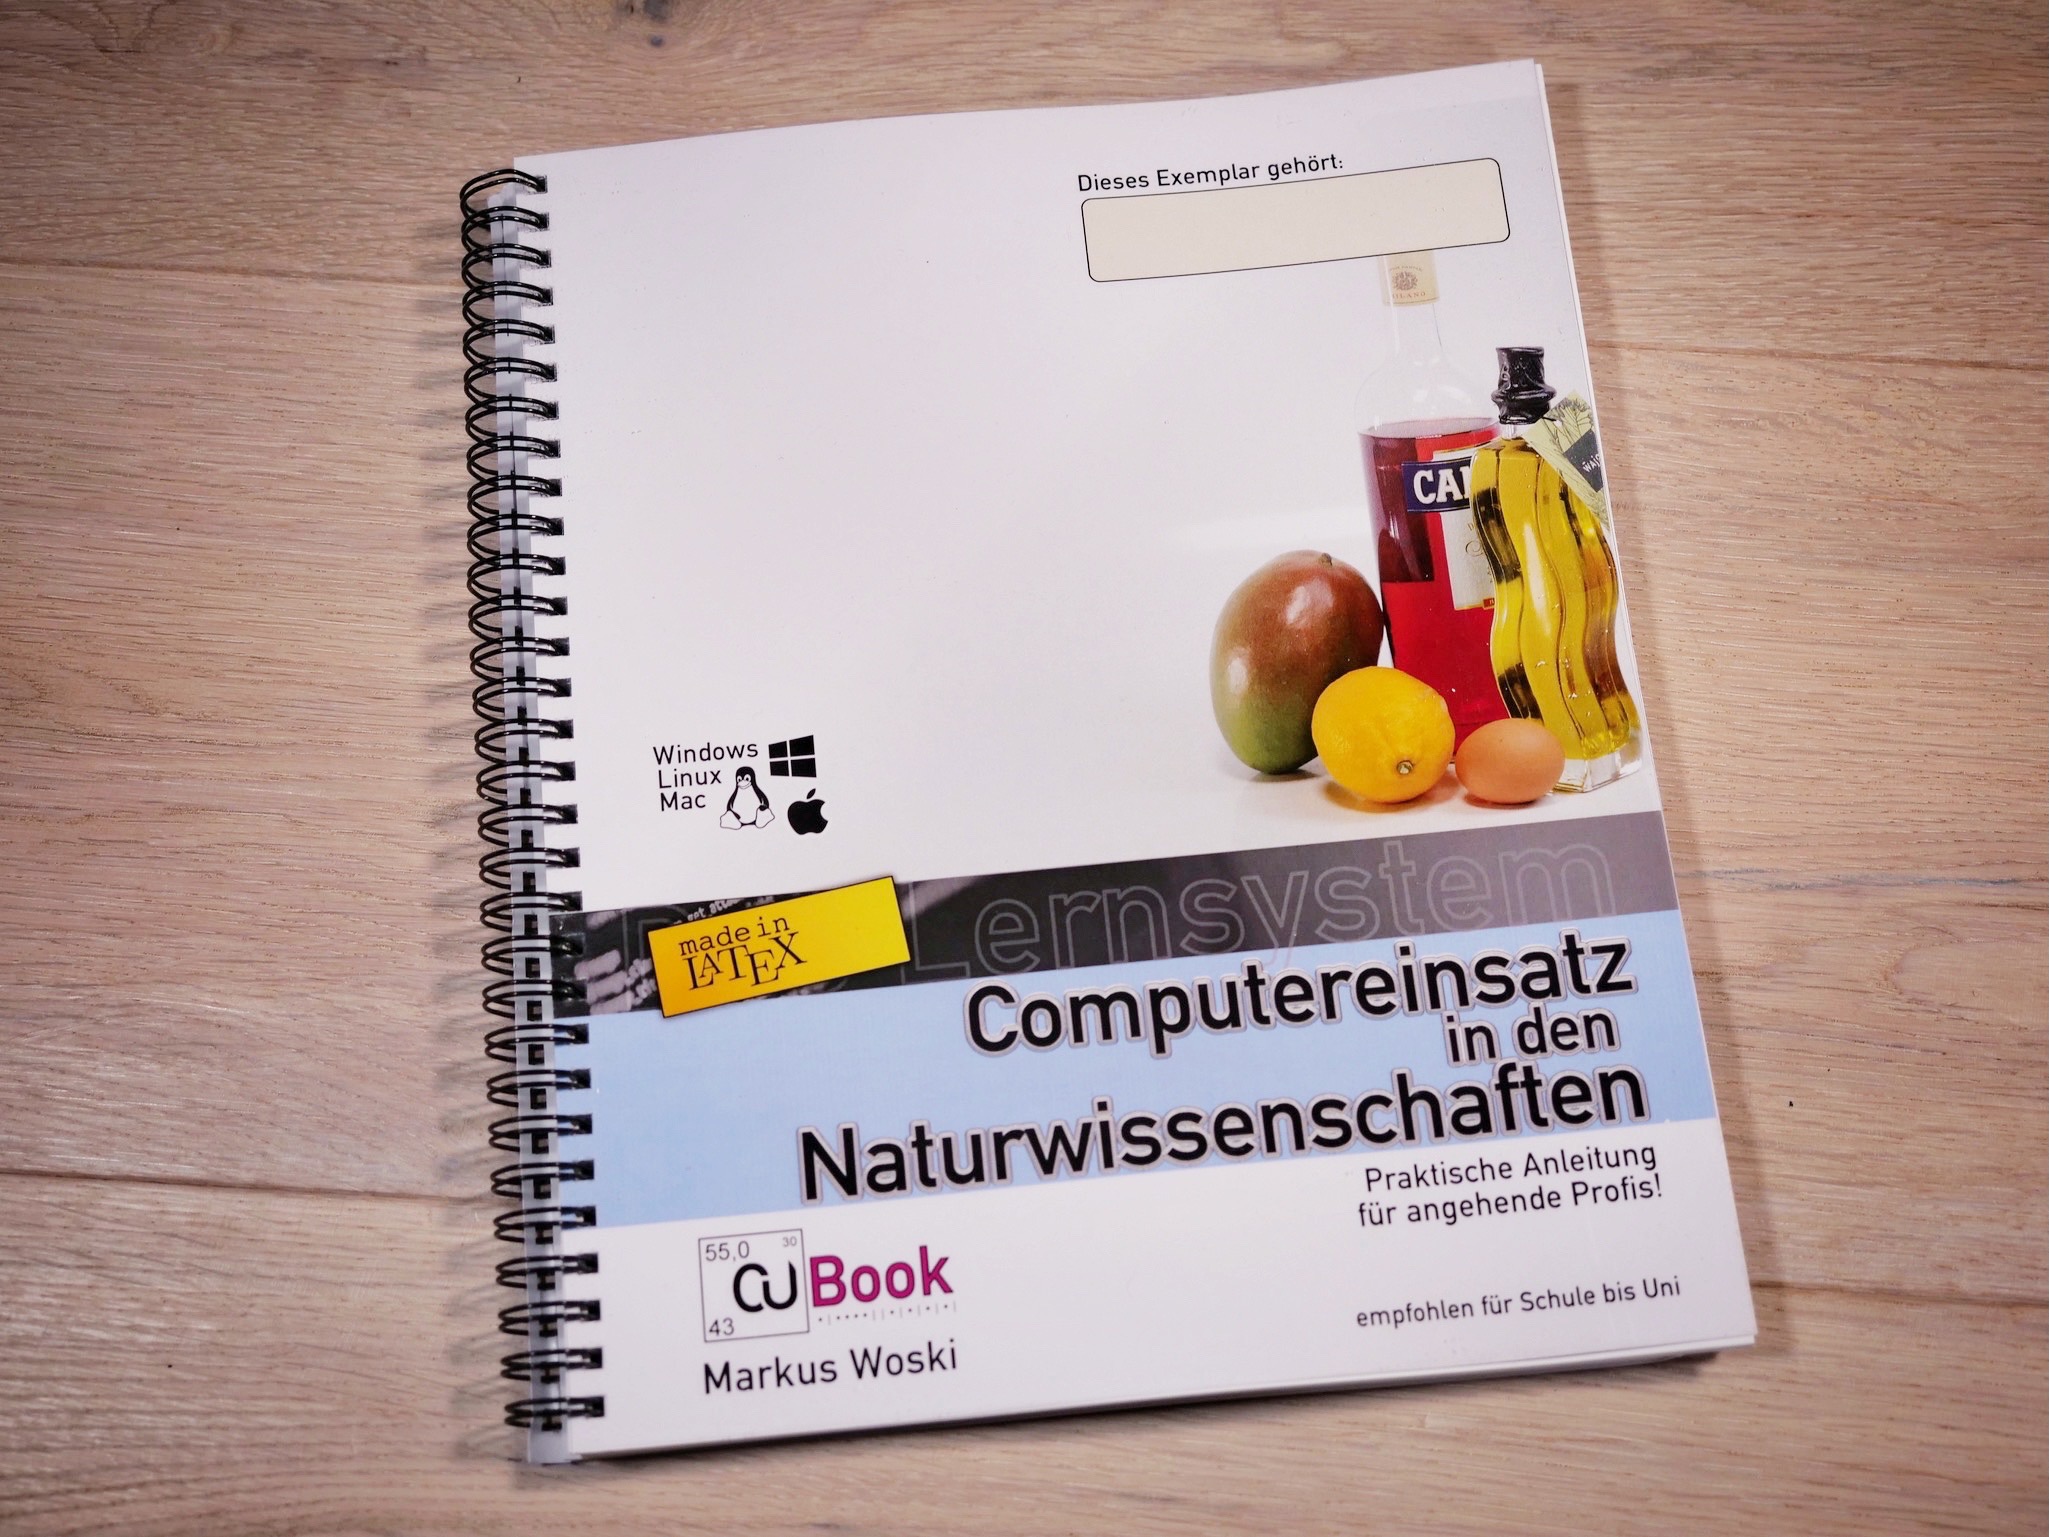 CU-Book (DIN A4 version)